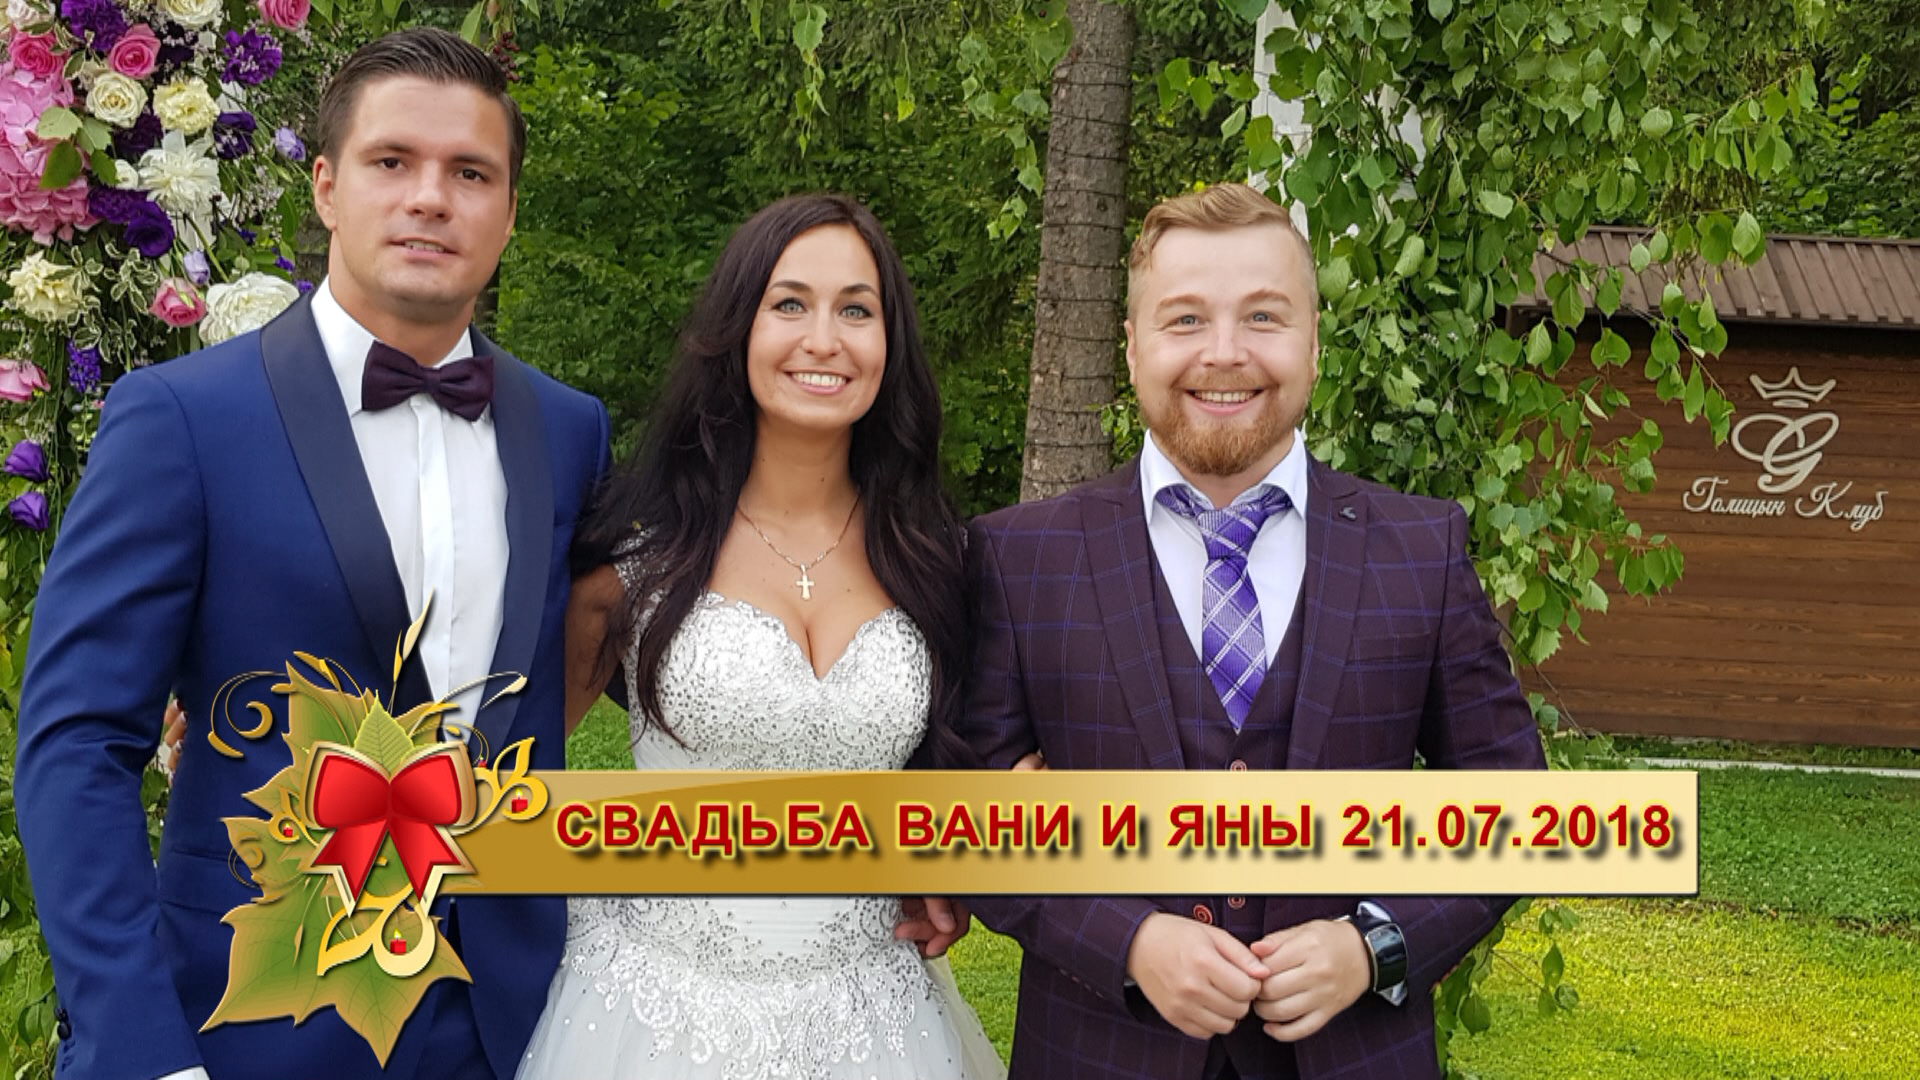 Ведущий на свадьбу в Москве, ведущий на свадьбу Спб